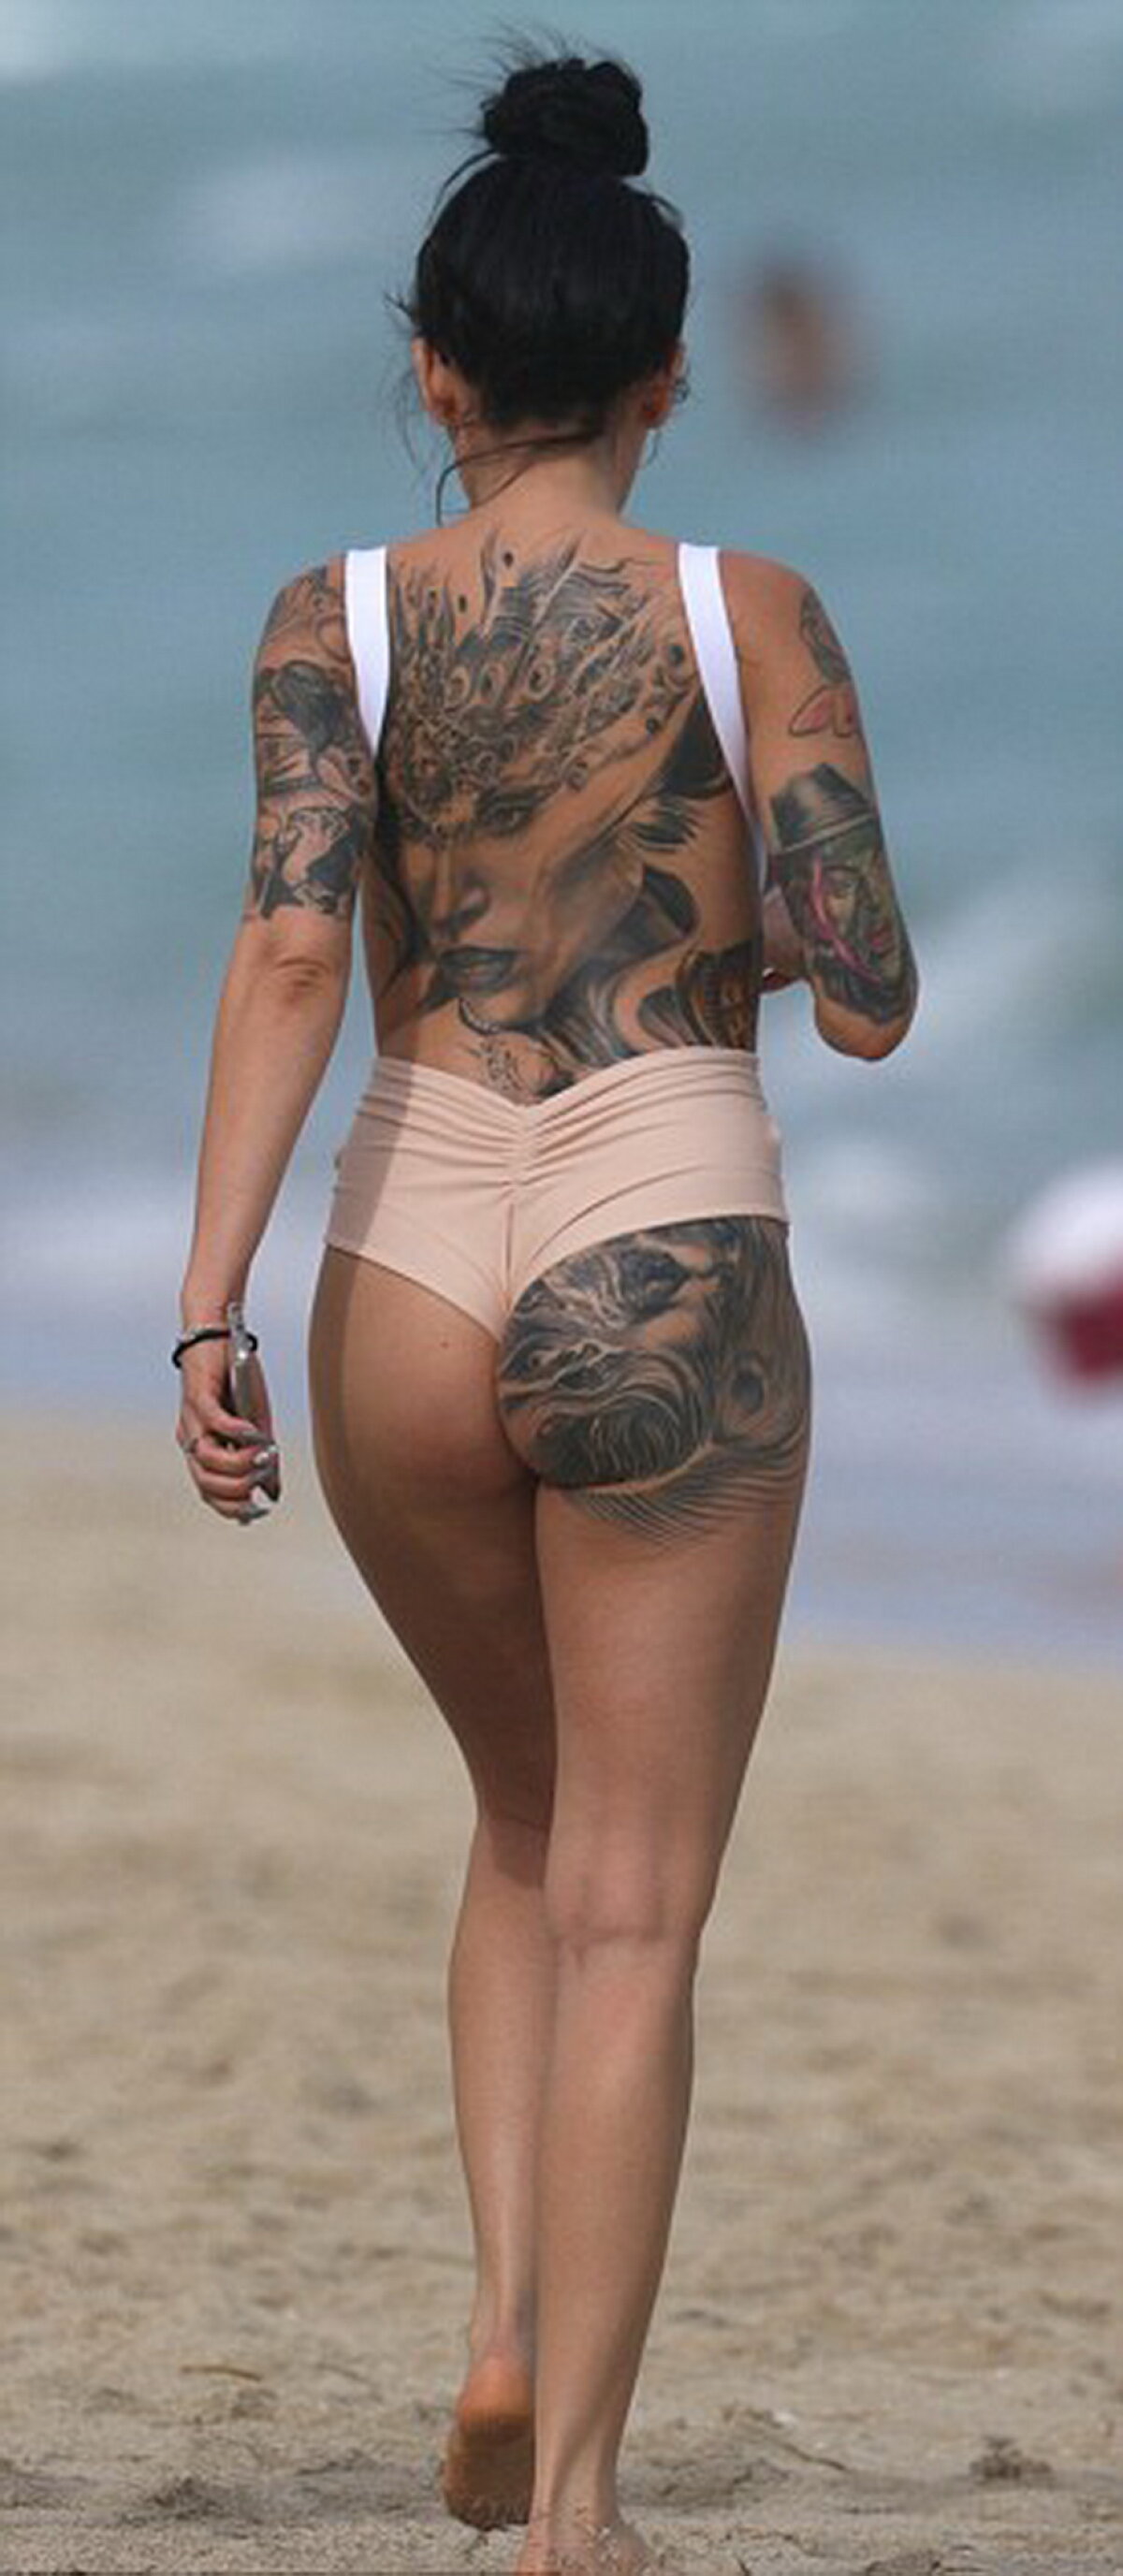 Tatuajele ei au fost atracţia plajei! Bruneta care a încins imaginaţia bărbaţilor din Miami 